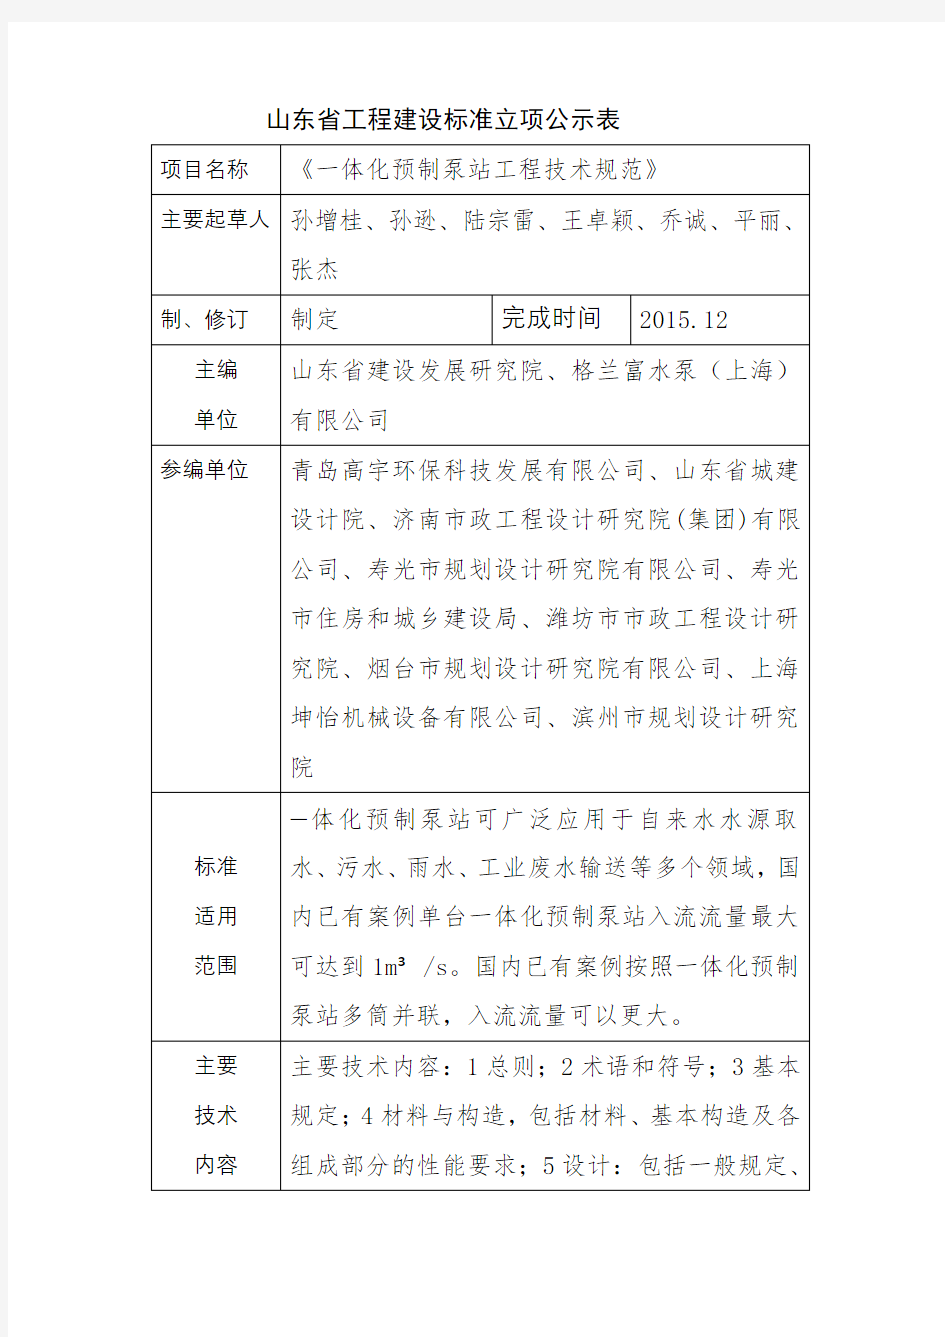 山东省工程建设标准立项公示表【模板】